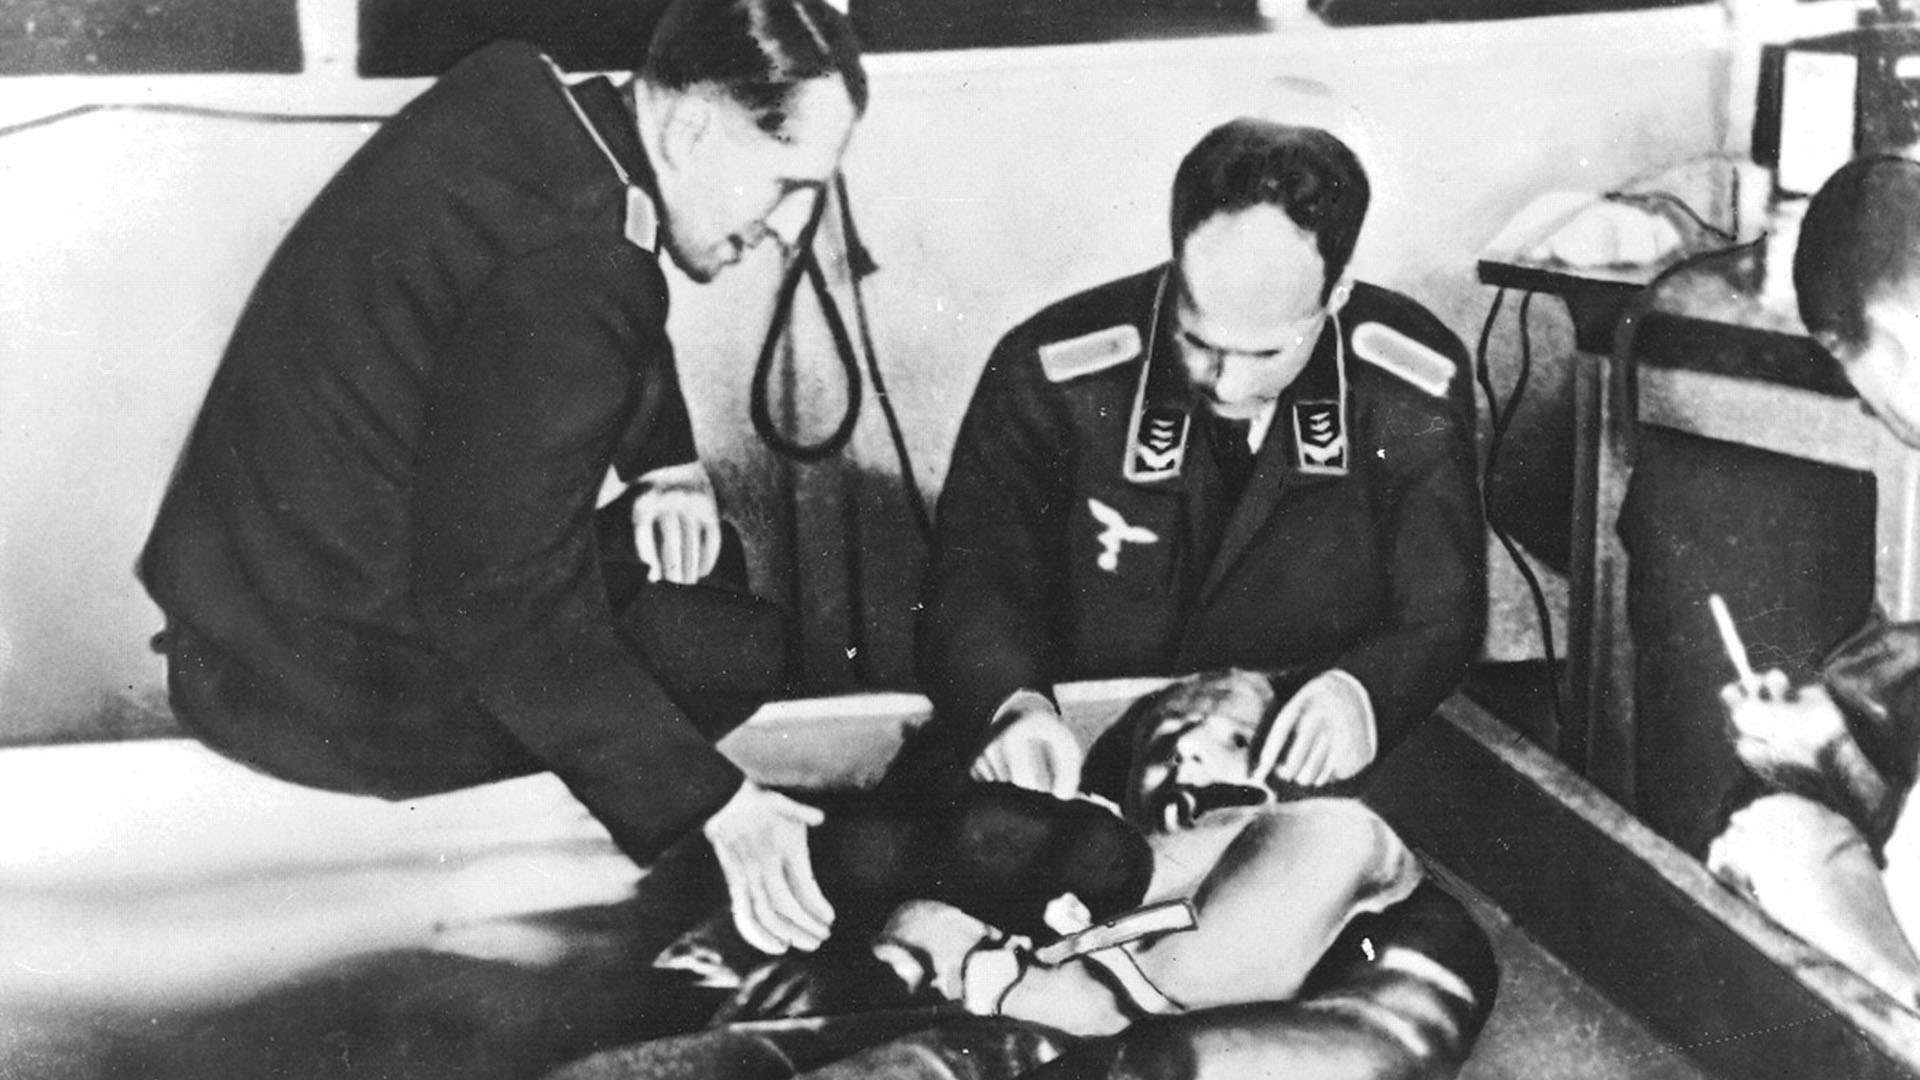 Inmersión en agua helada durante experimentos de hipotermia en el campo de concentración de Dachau. Lideran el experimento el profesor Holzlohner y el Dr Rascher. Los prisioneros no se ofrecieron ni dieron su consentimiento: fueron obligados a participar (Universal History Archive/UIG/Shutterstock)

